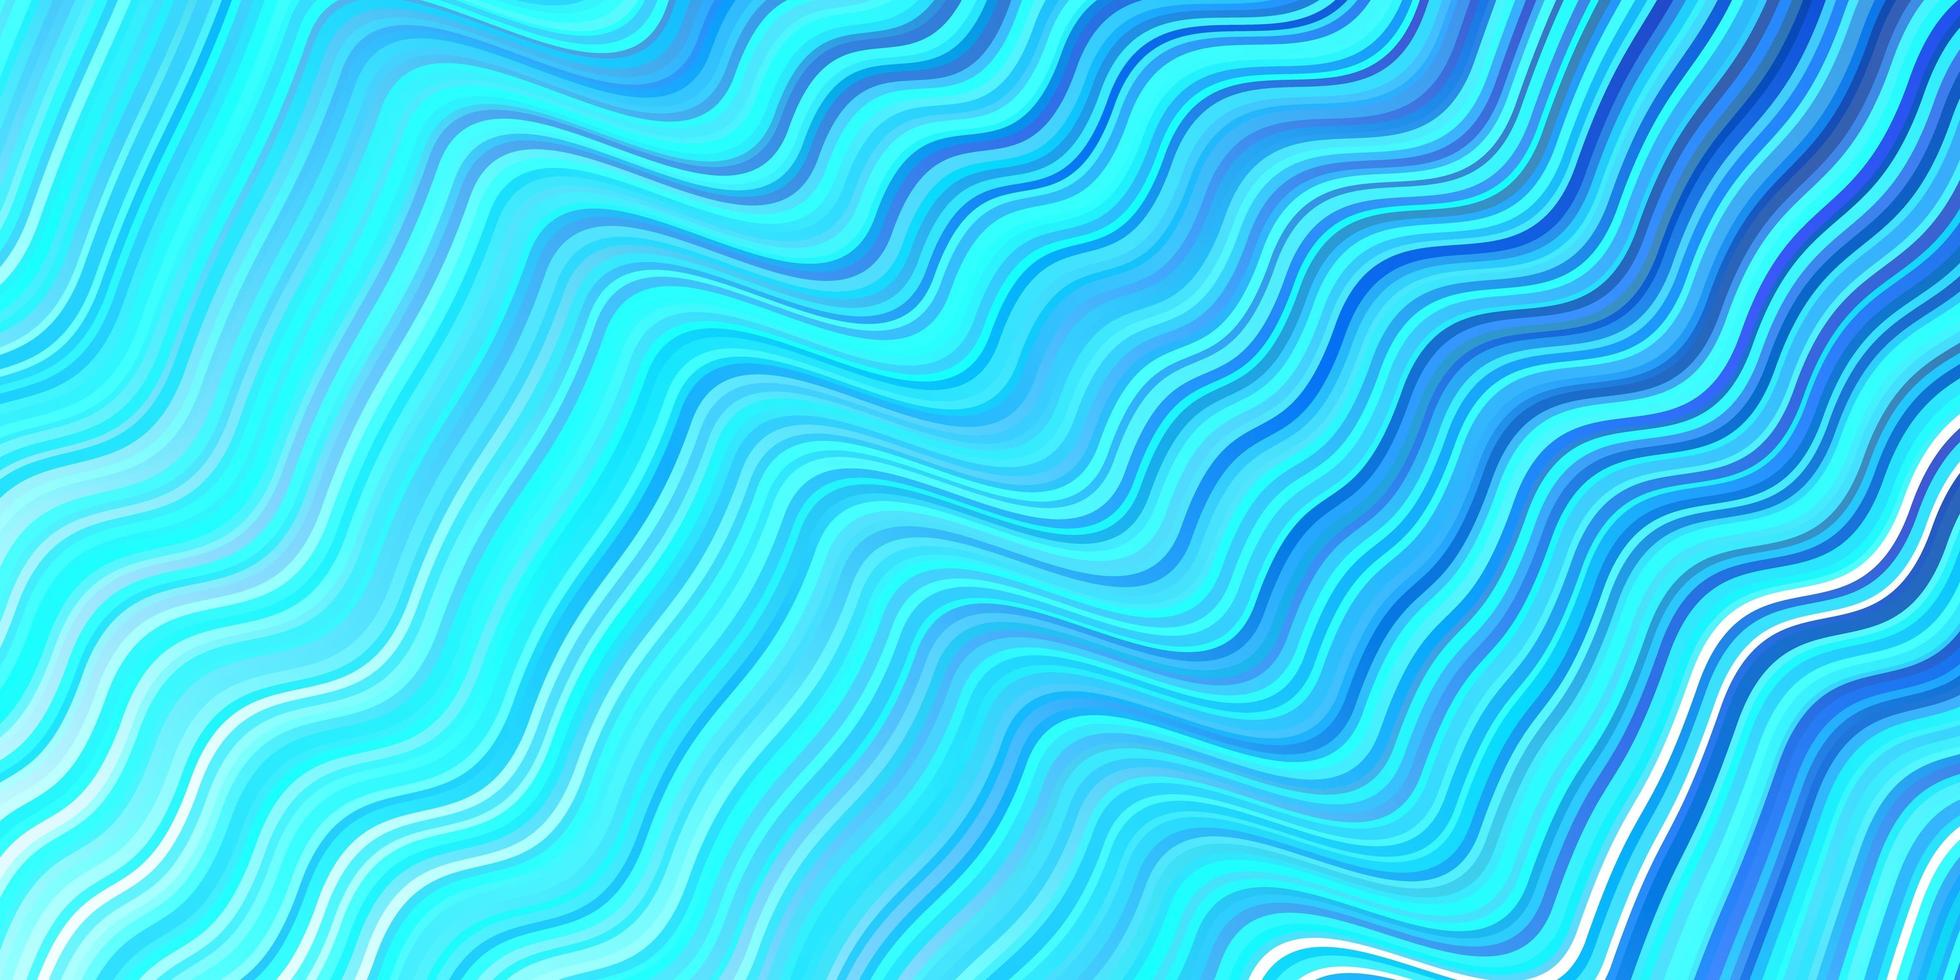 toile de fond de vecteur bleu clair avec des lignes courbes.